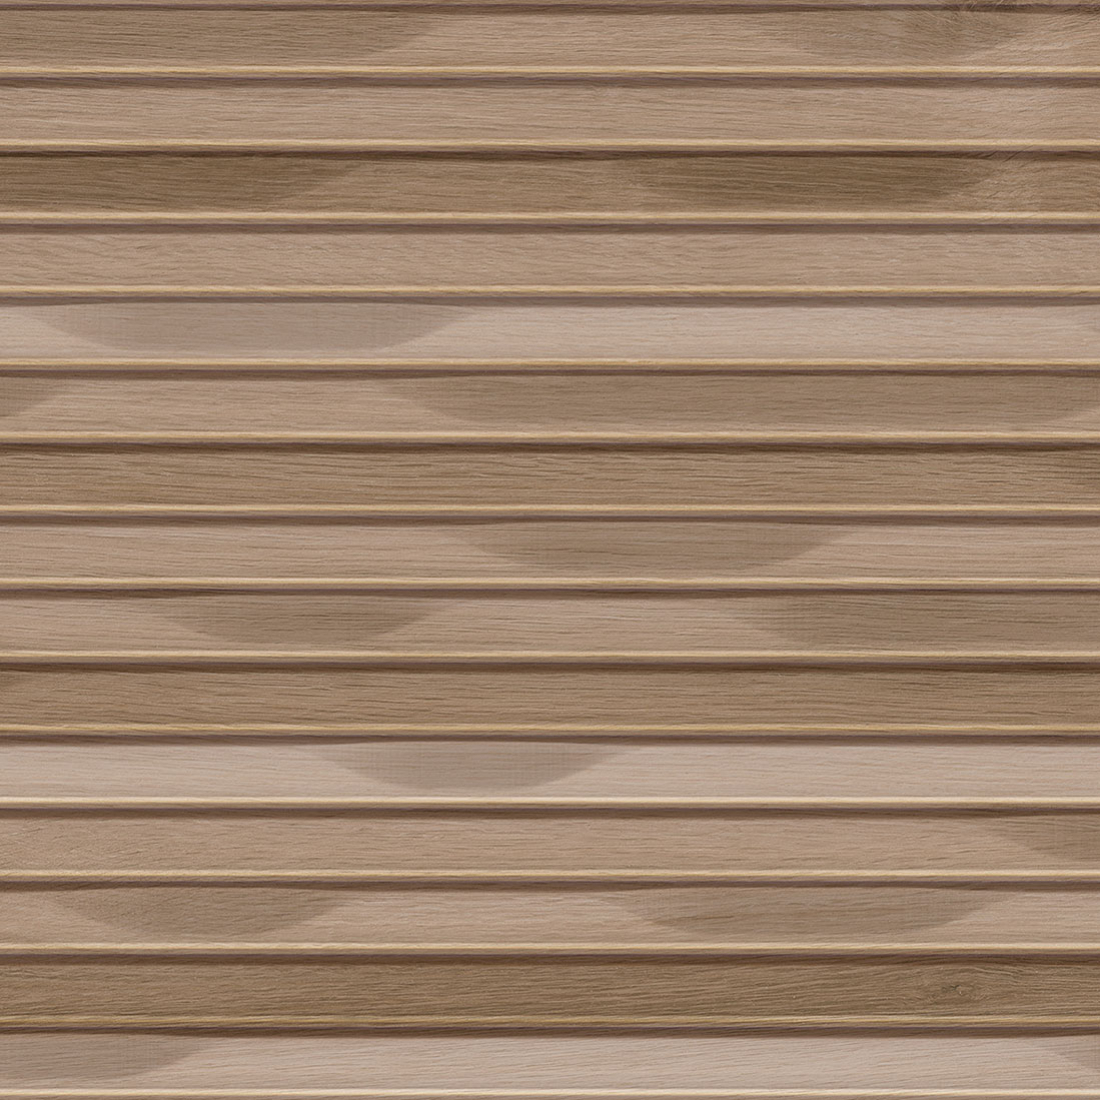 Texture de bois couleur clair avec un motif en relief